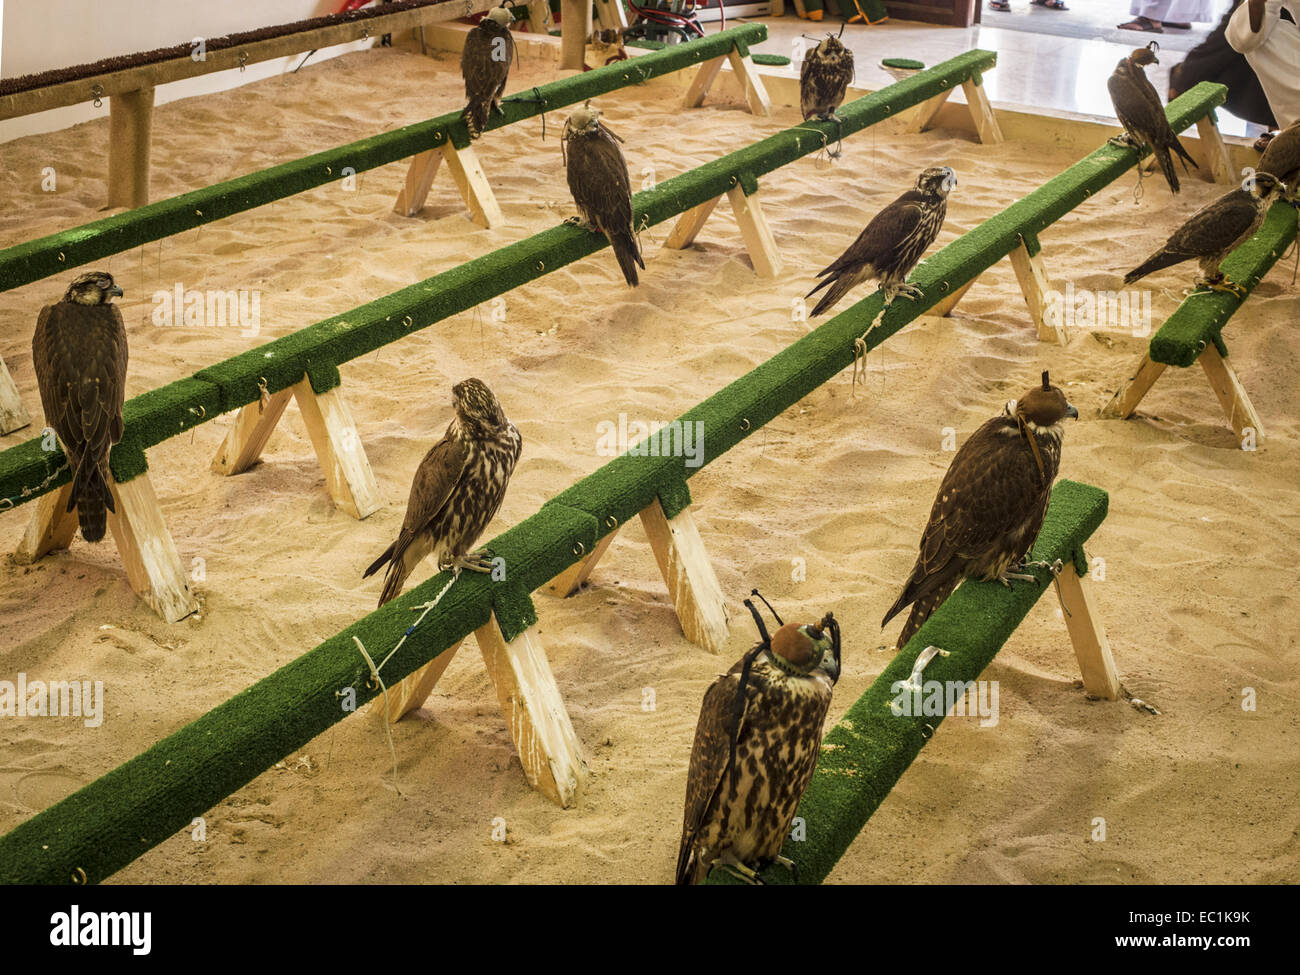 Falchi sul display nella città di Doha shop. Il Falcon è uccello nazionale degli Emirati arabi uniti, Qatar, Arabia Saudita e Oman, un Foto Stock